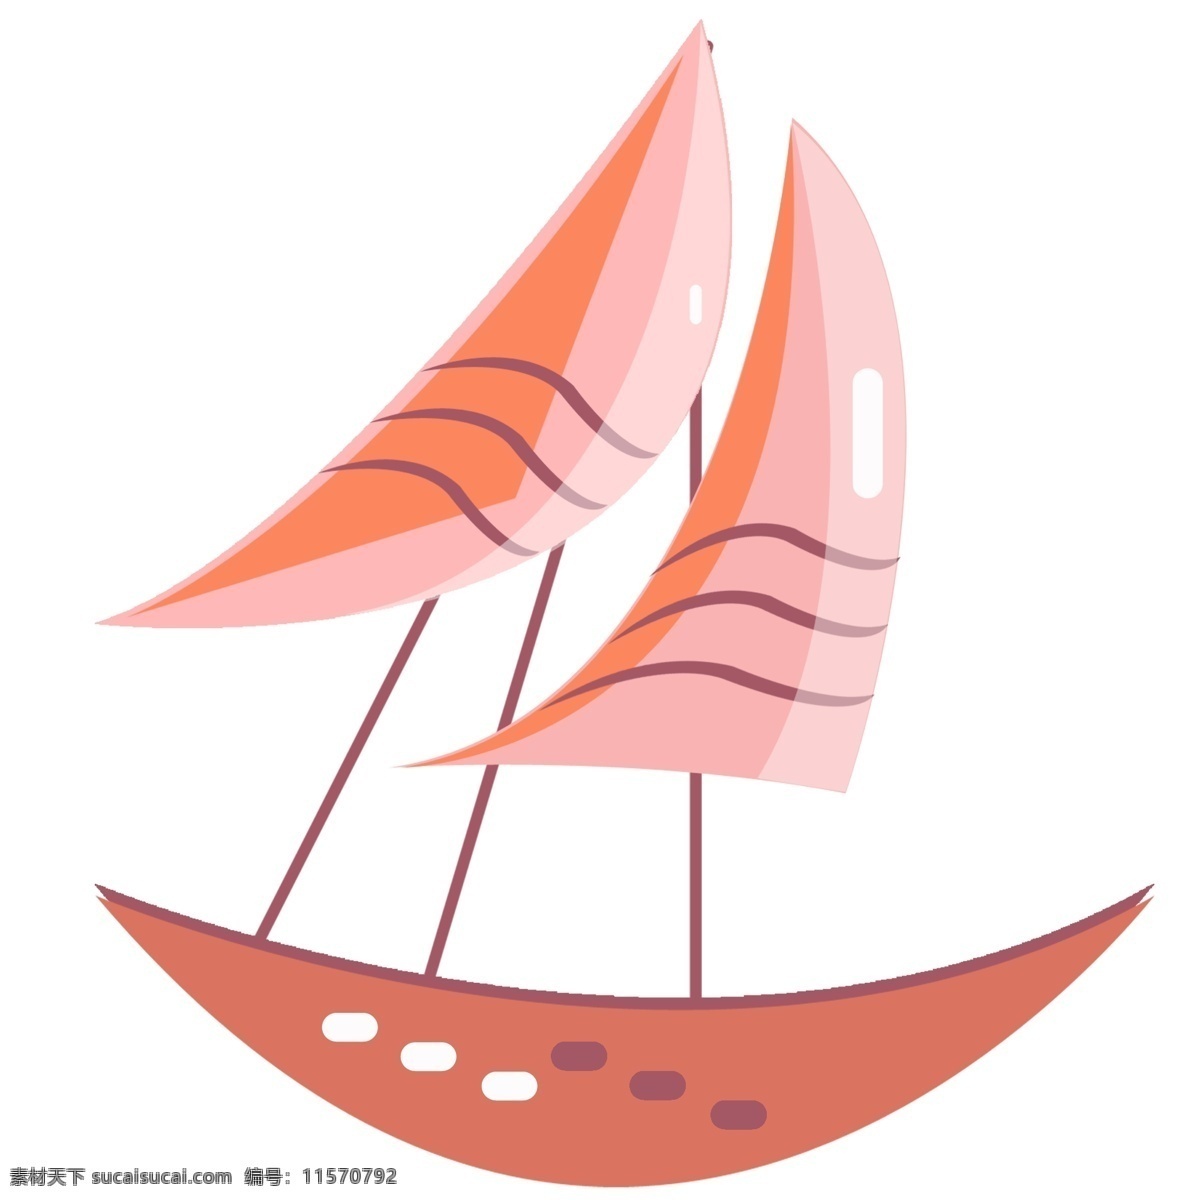 弧形帆船船只 帆船 运输 交通工具